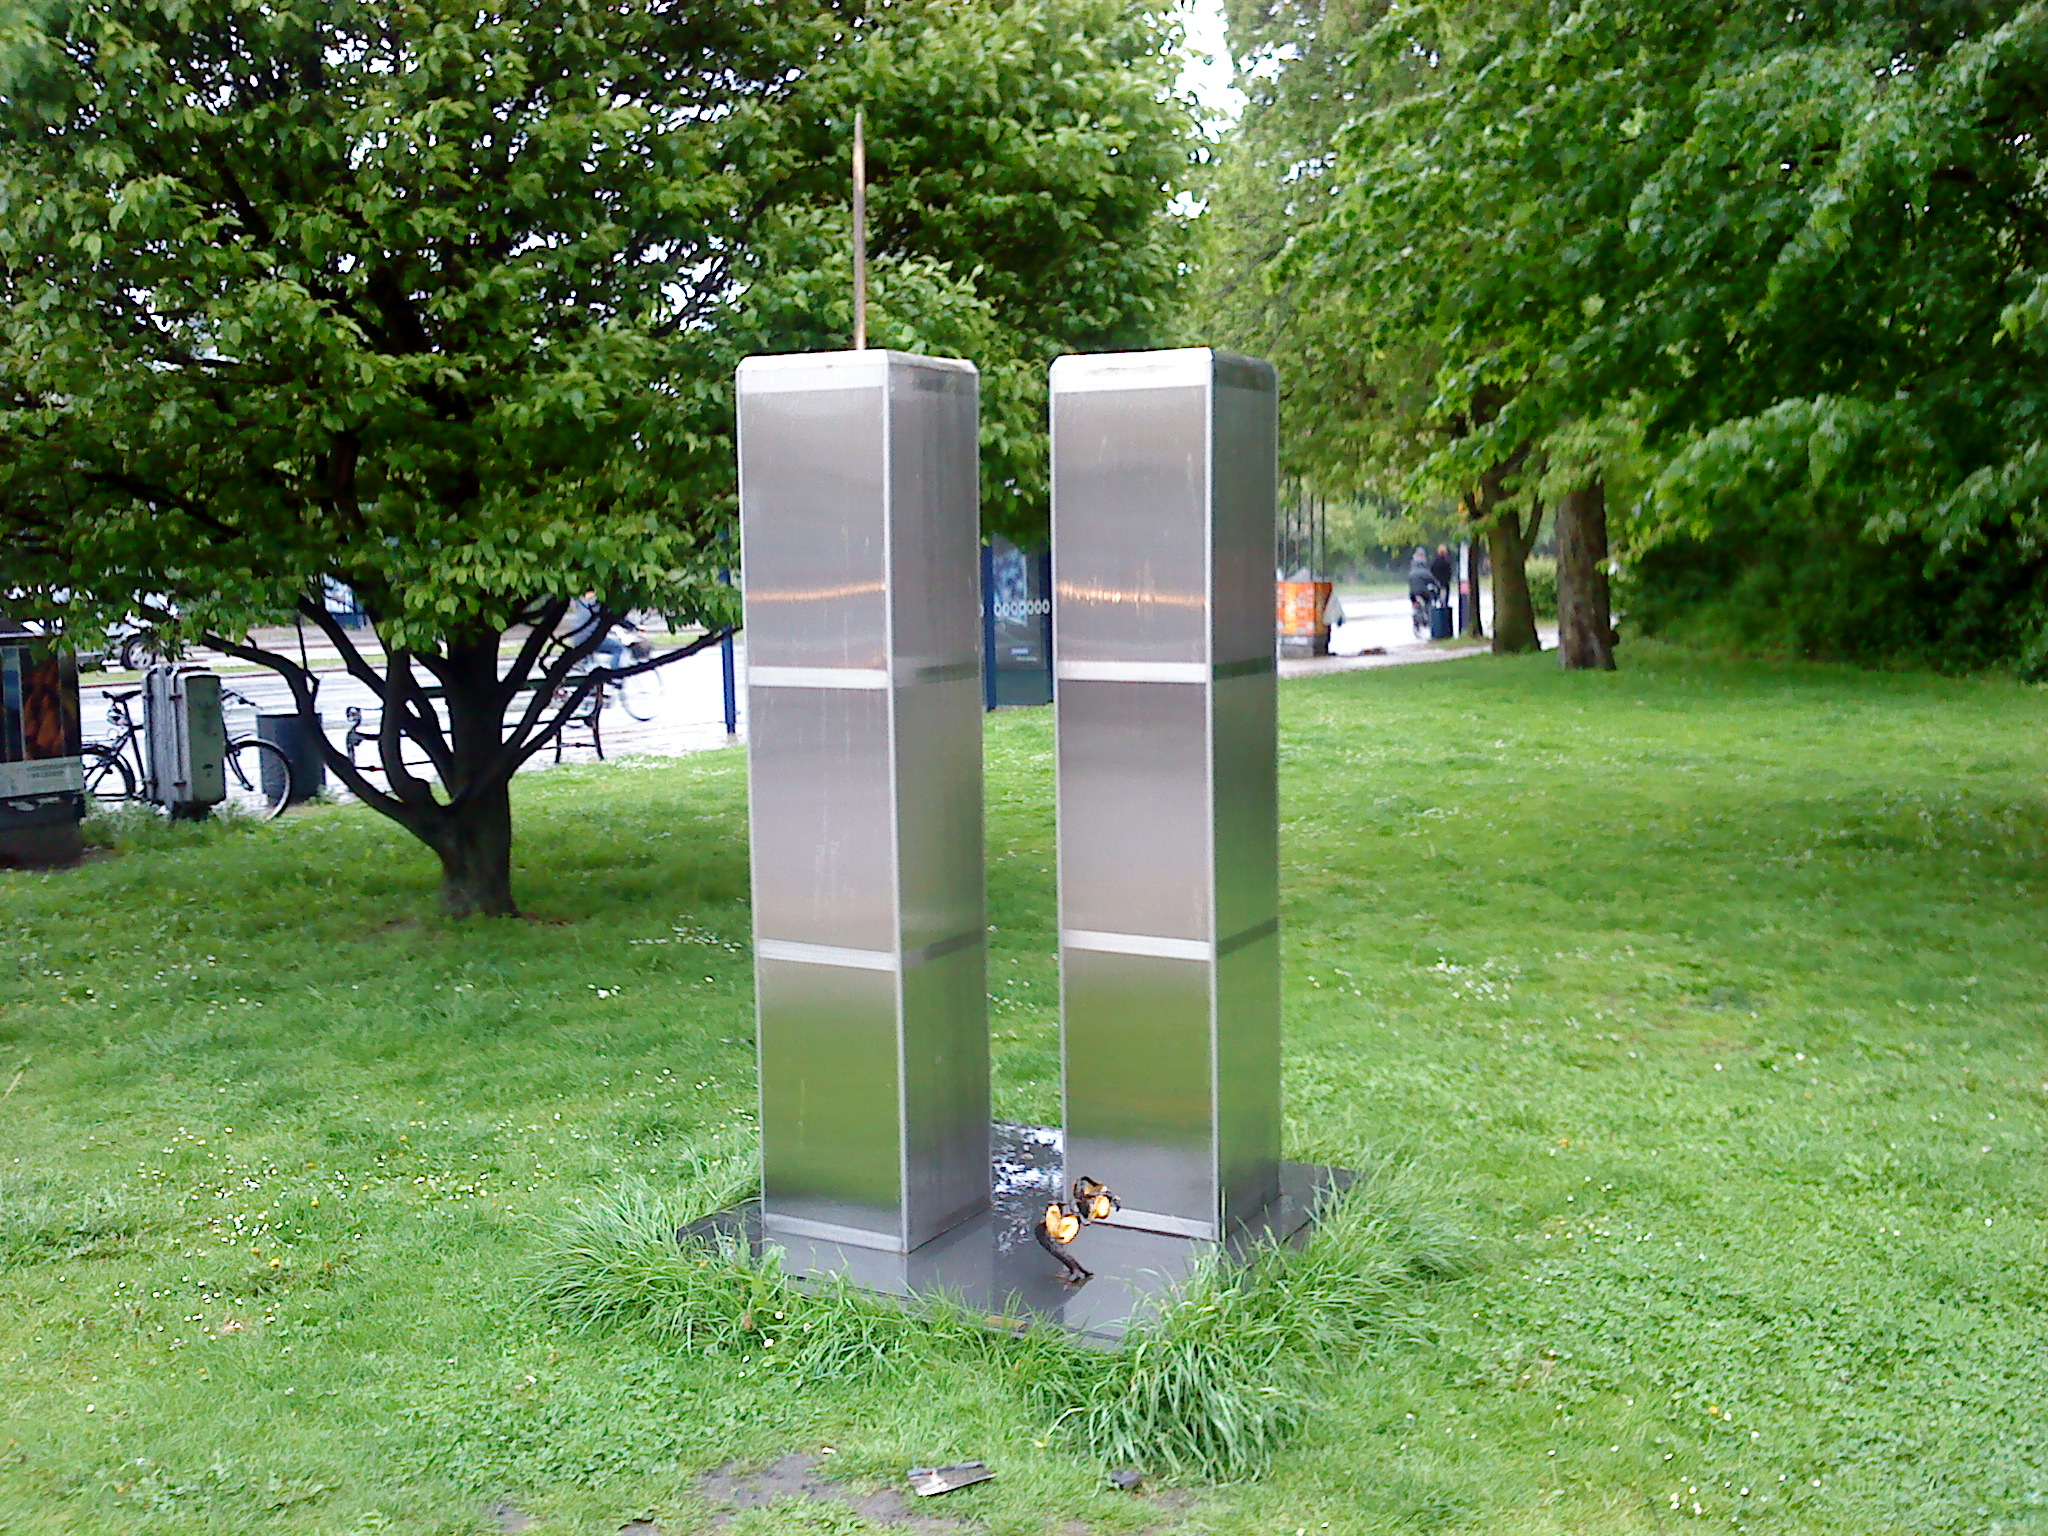 911 Monument (Copenhagen, Denmark)